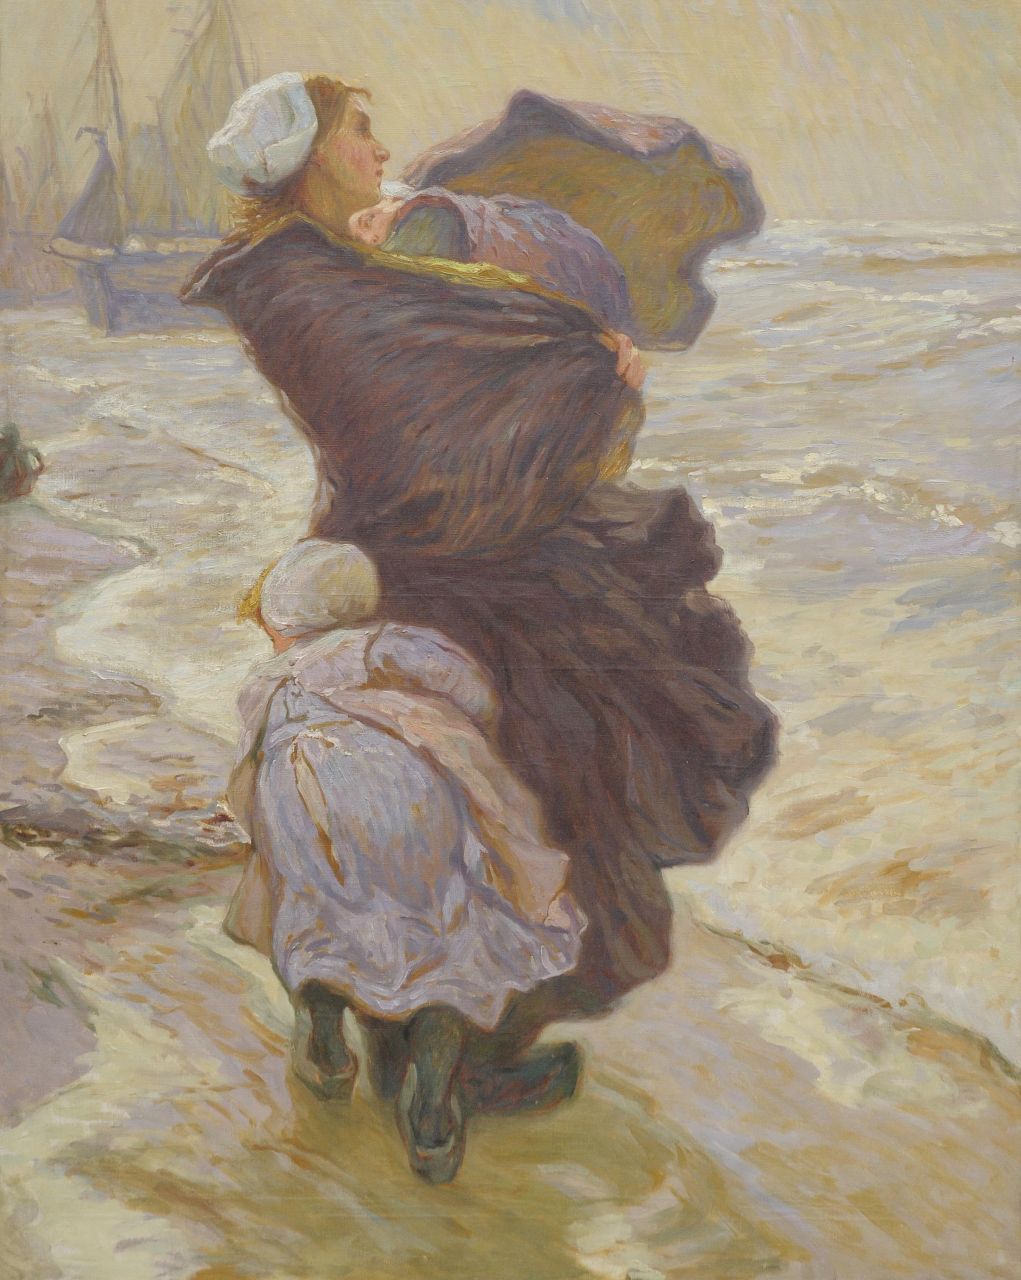 Bartels H. von | Hans von Bartels, Waiting for the return of the fishing fleet, oil on canvas 120.0 x 95.5 cm